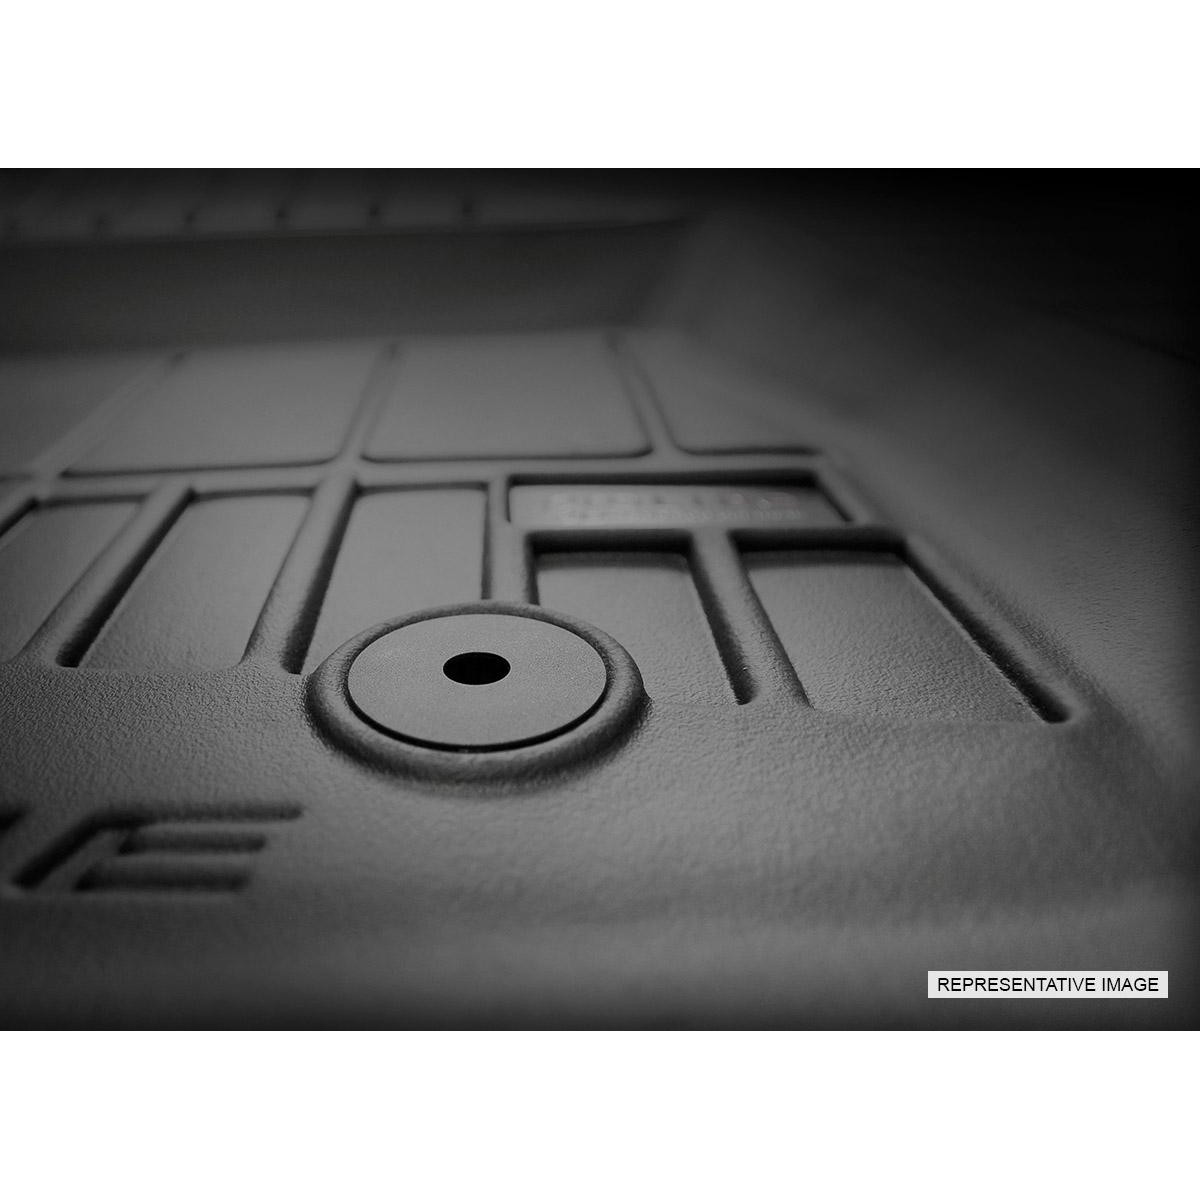 Guminiai kilimėliai Proline BMW 3 GT (F34) 2013-2019m. / paaukštintais kraštais